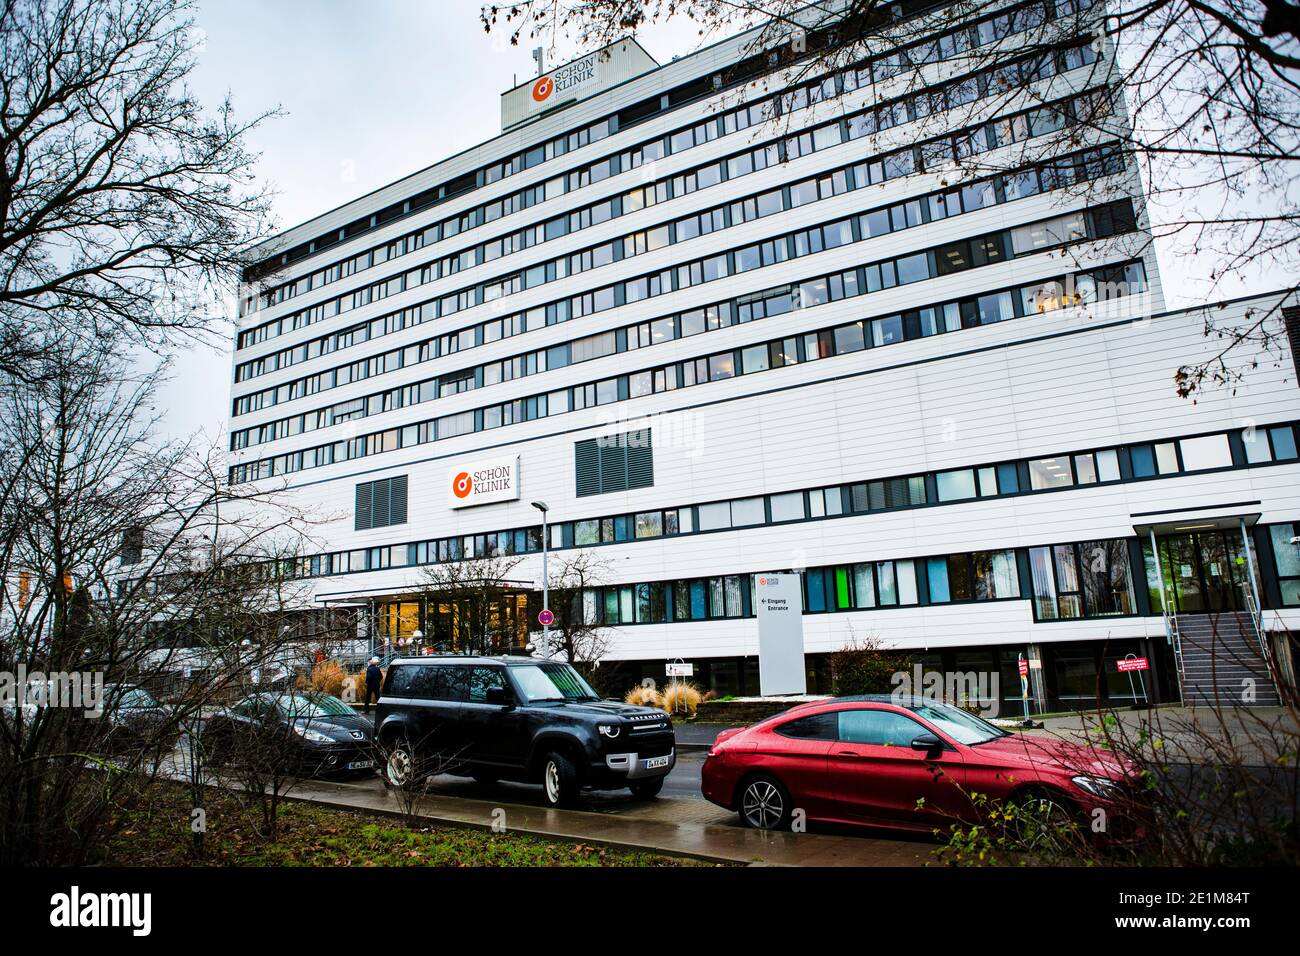 Krankenhaus Schön-Klinik im Düsseldorfer Stadtteil Heerdt. Die Schön-Klinik war früher ein städtisches Krankenhaus, liegt direkt am Rheinufer. Stock Photo